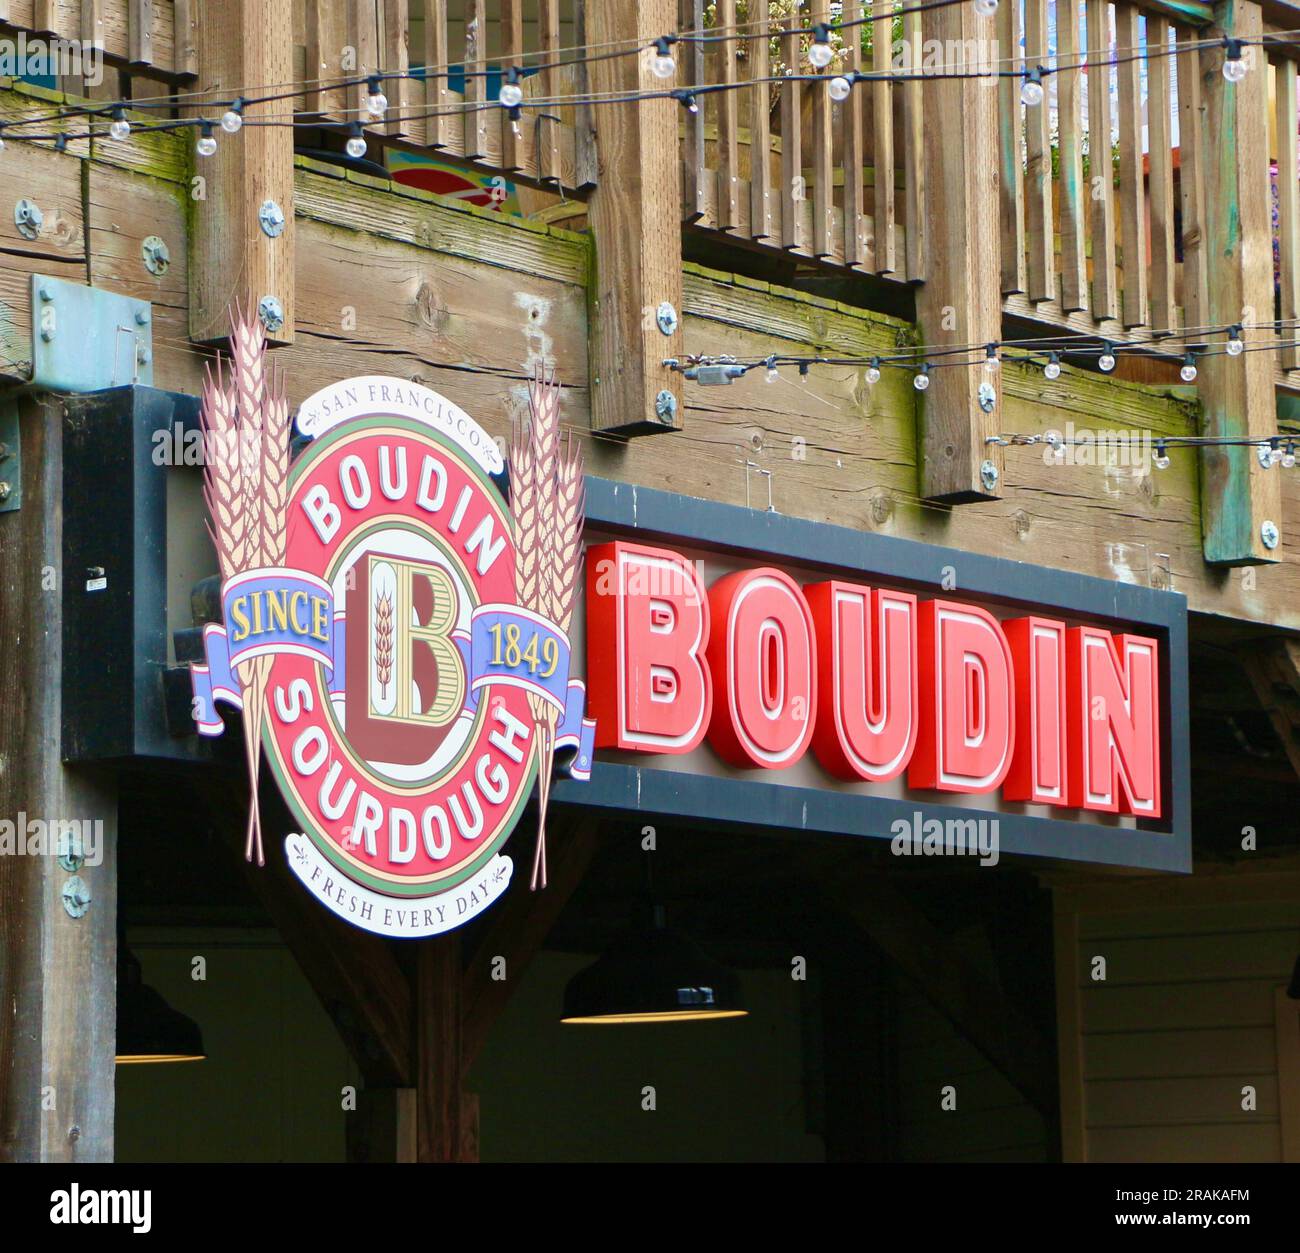 Sign for Boudin Sourdough Since 1849 restaurant Pier 39 San Francisco California USA Stock Photo